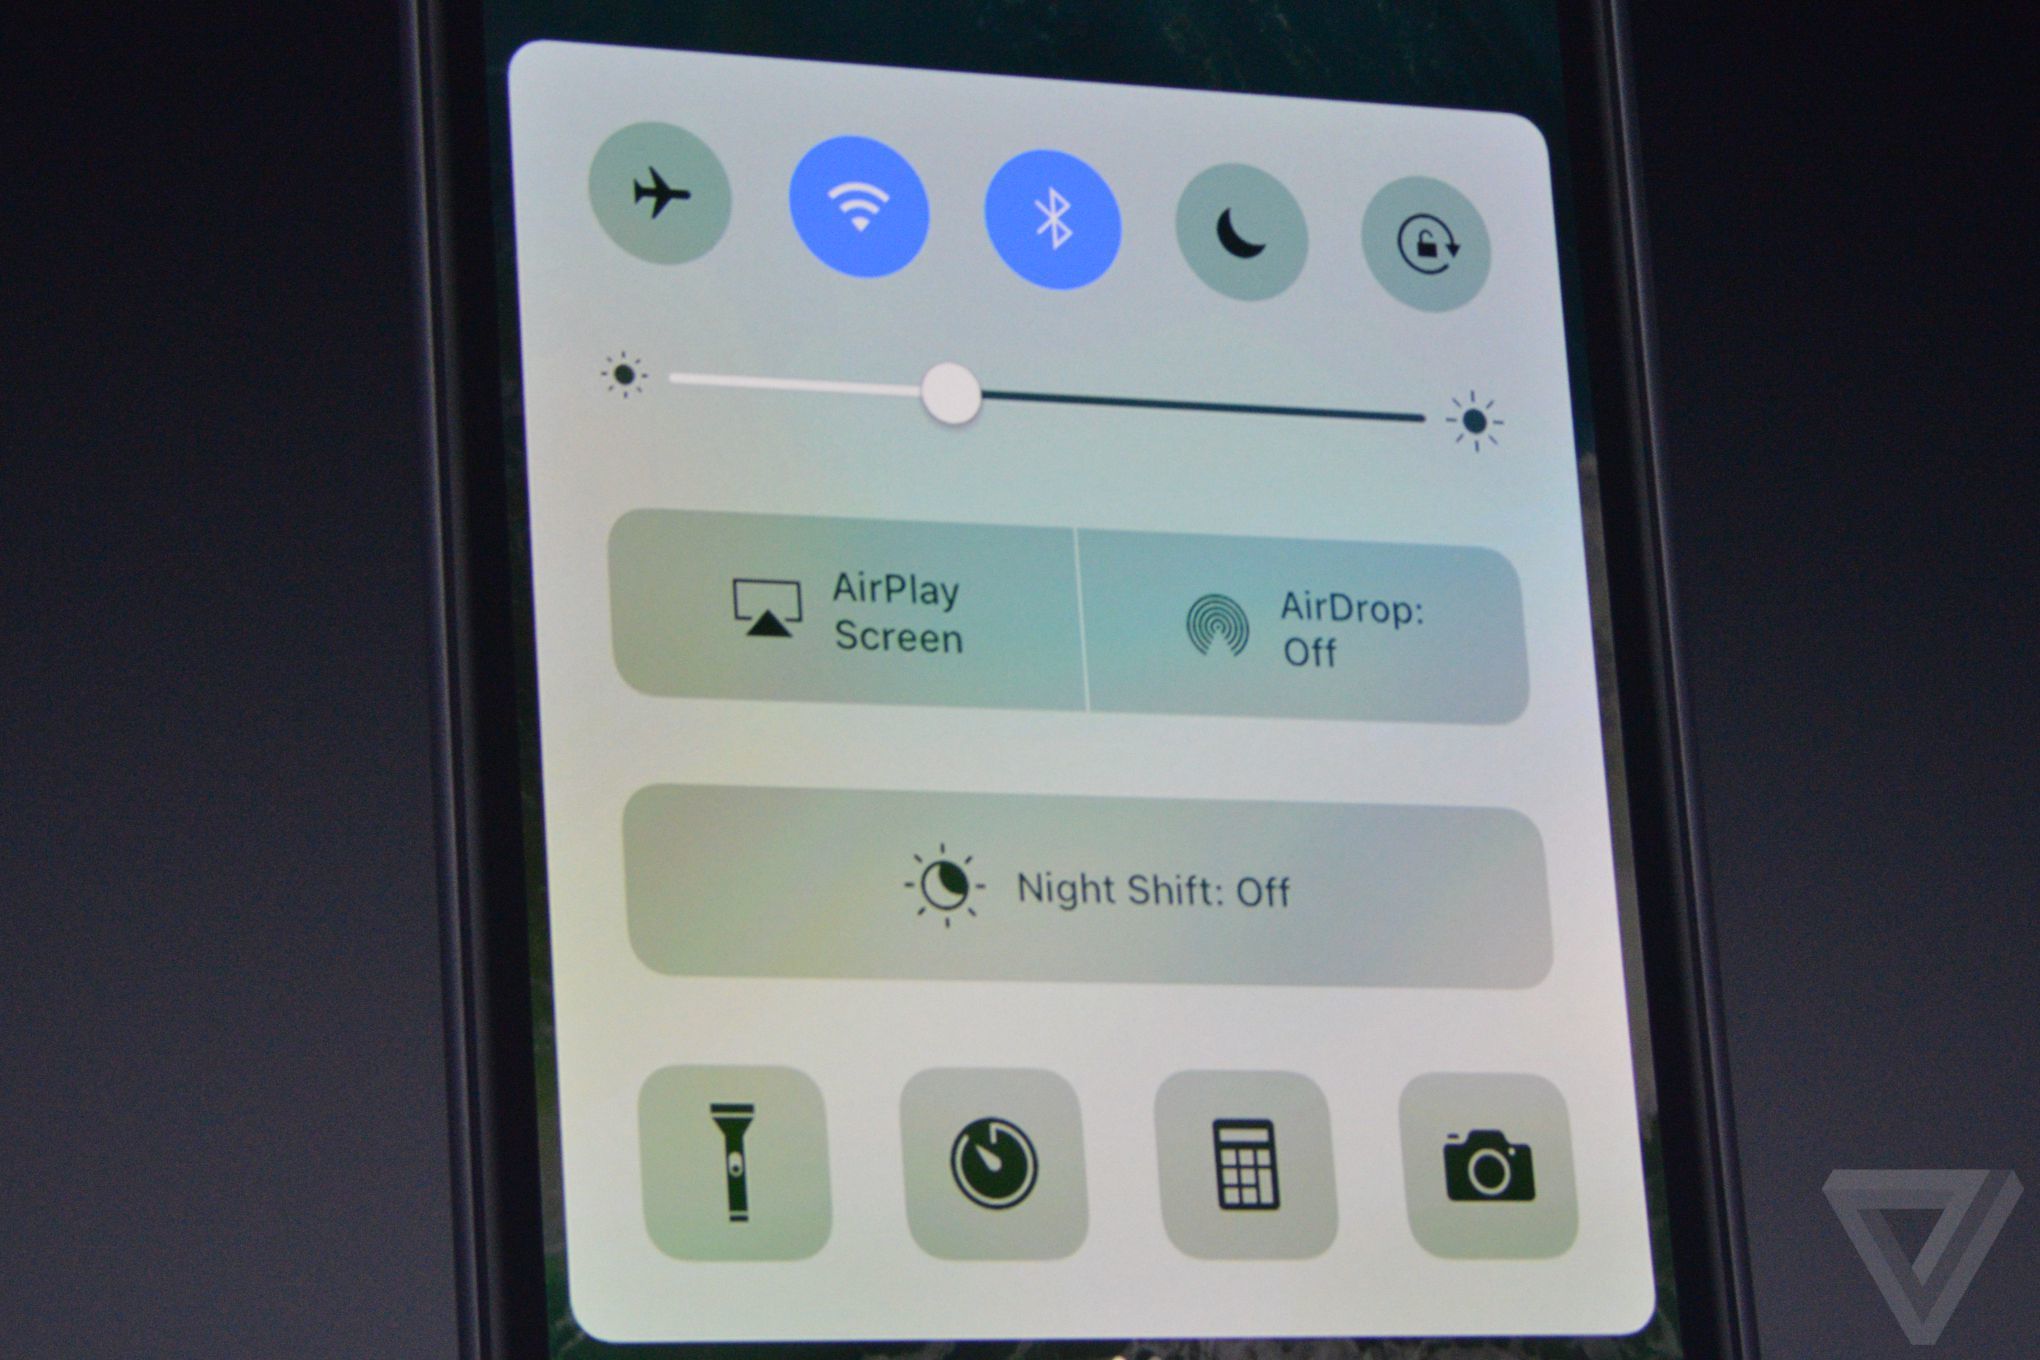 iOS 10 ra mắt: Quá nhiều cải tiến về giao diện và tính năng